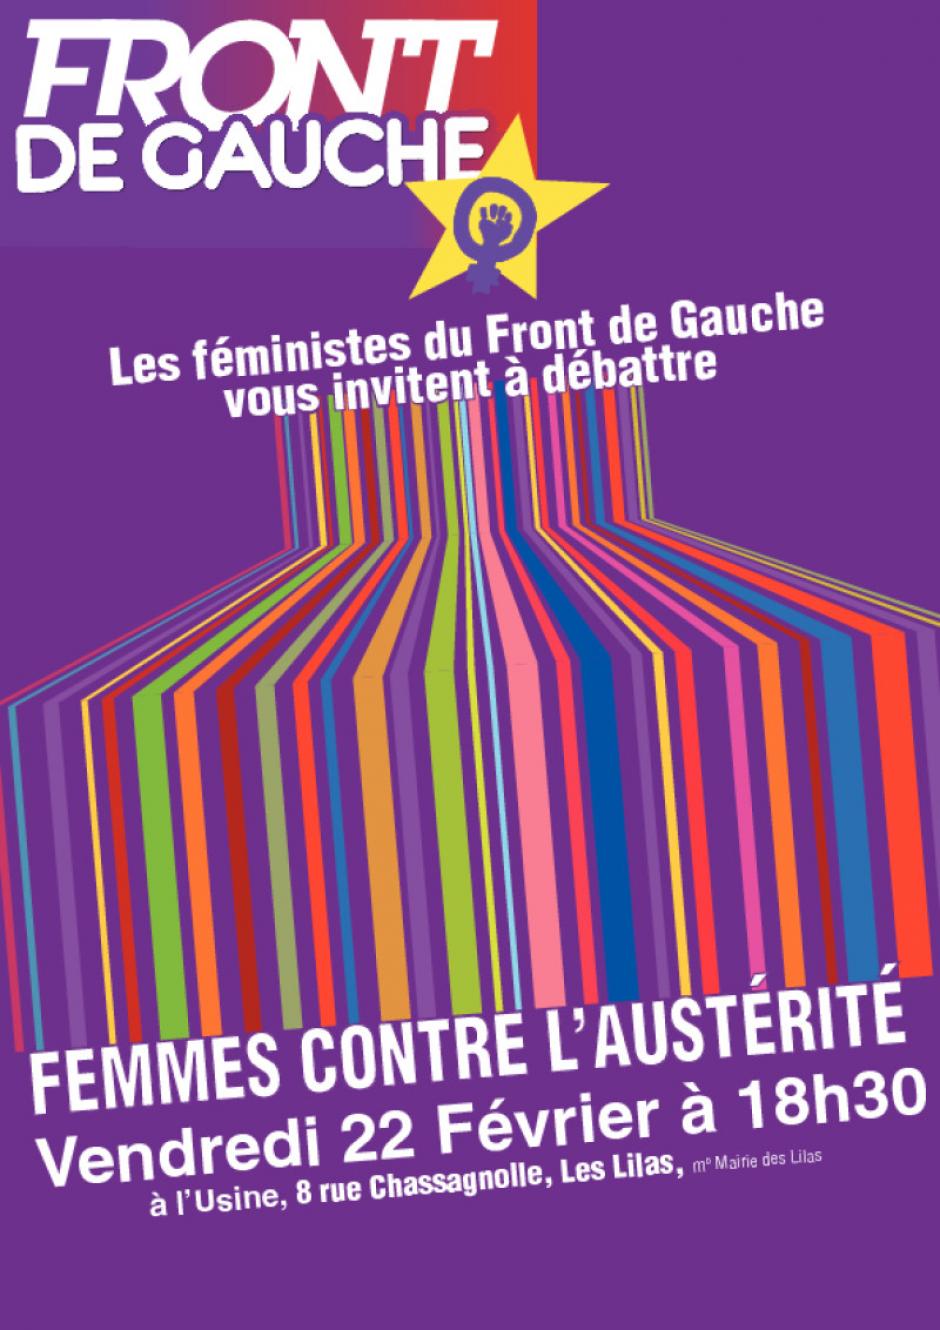 Vendredi 22 Février : rencontre  les femmes contre l'austérité